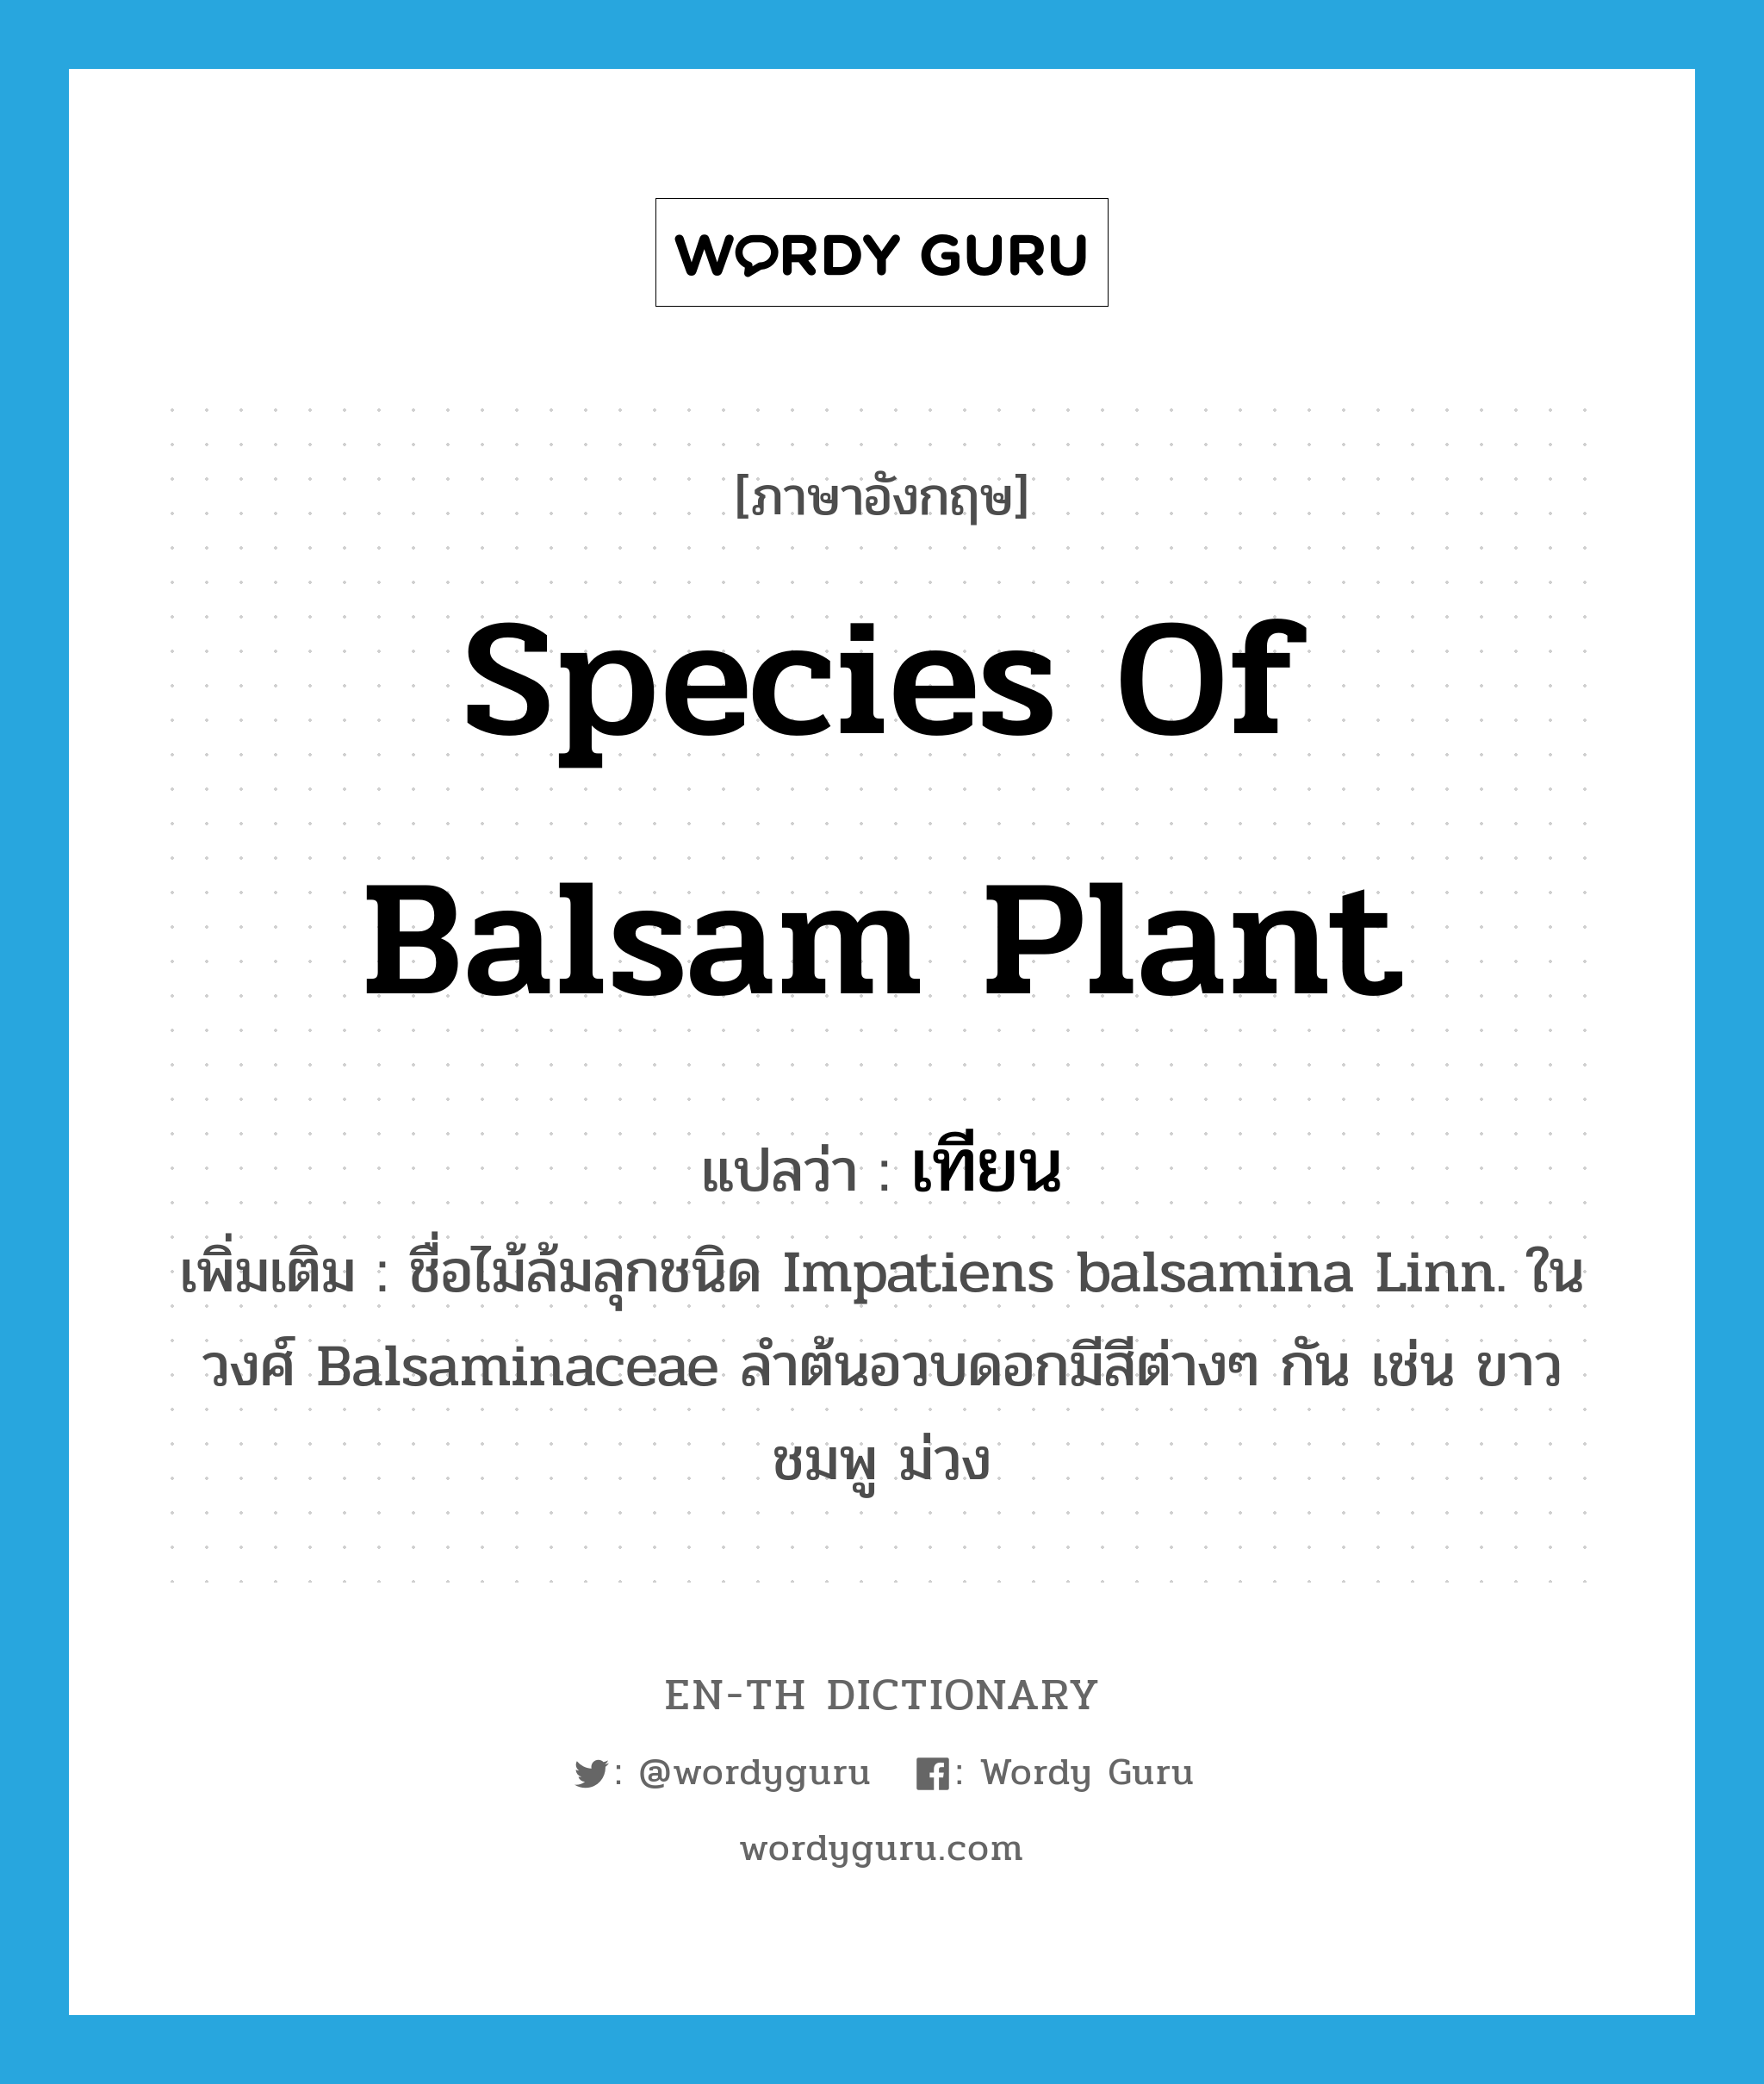 เทียน ภาษาอังกฤษ?, คำศัพท์ภาษาอังกฤษ เทียน แปลว่า species of balsam plant ประเภท N เพิ่มเติม ชื่อไม้ล้มลุกชนิด Impatiens balsamina Linn. ในวงศ์ Balsaminaceae ลำต้นอวบดอกมีสีต่างๆ กัน เช่น ขาว ชมพู ม่วง หมวด N